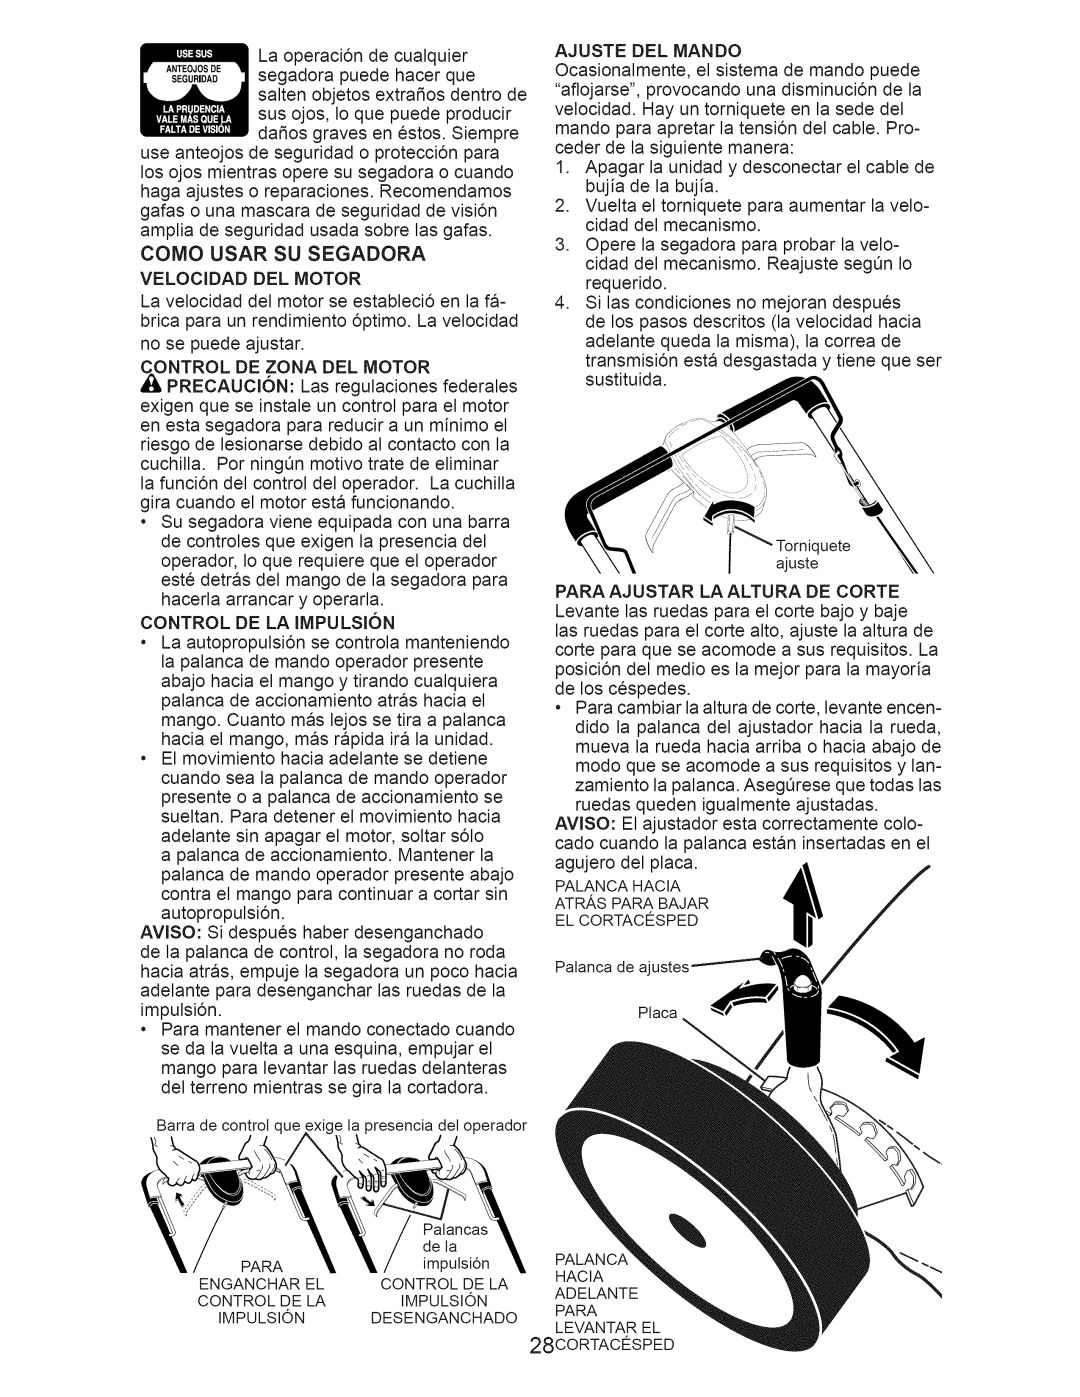 Craftsman 917.374360 owner manual Como Usar Su Segadora, CONTROL DE LA IMPULSI6N 